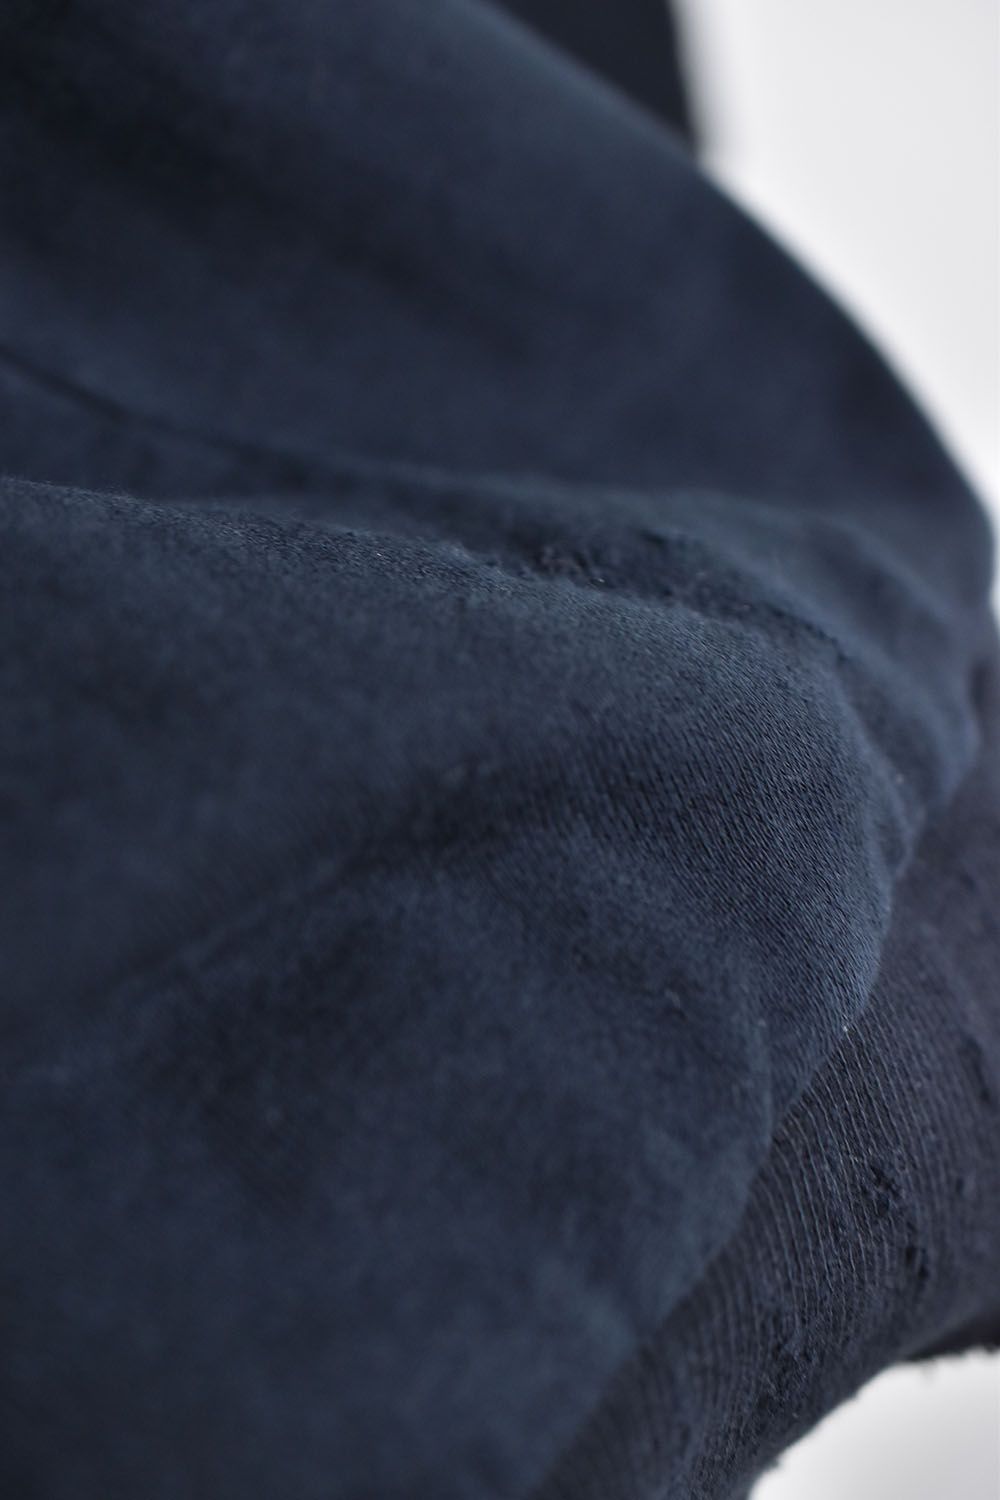 Damage Sweat Over Sized Pullover"Black"/ ダメージスウェットオーバーサイズドプルオーバー"ブラック"